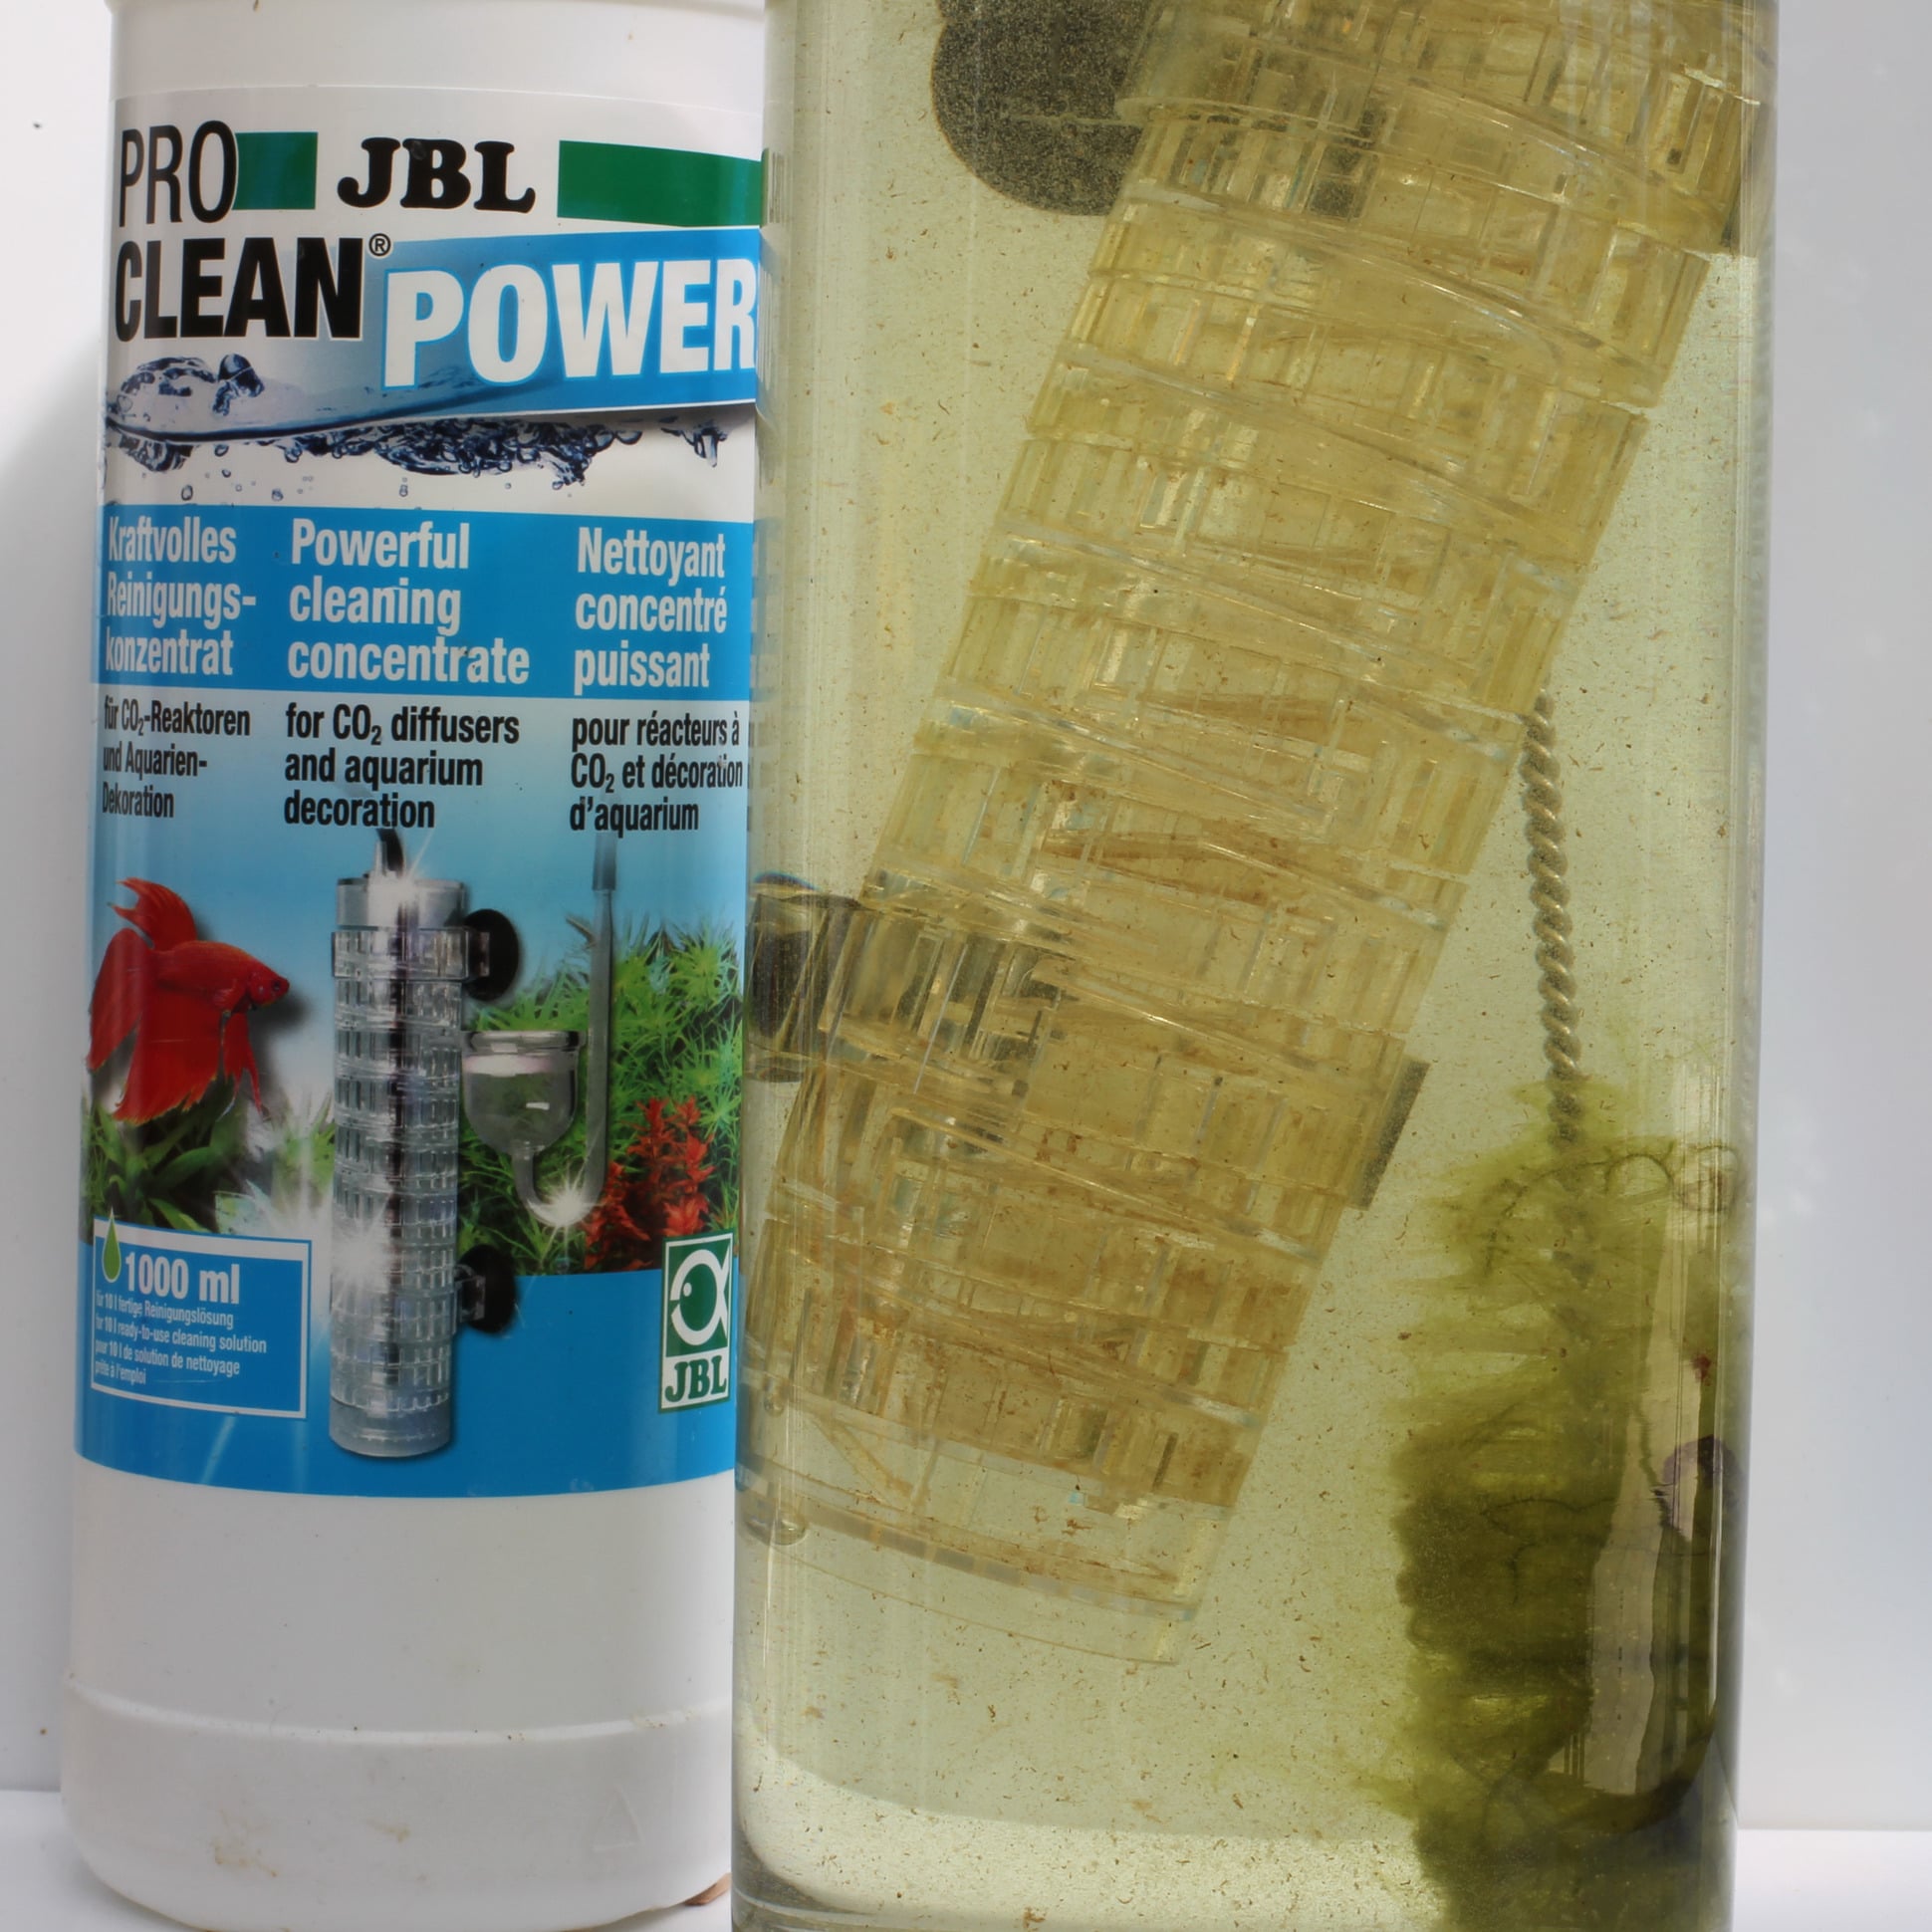 jbl-proclean-power-950-ml-concentre-nettoyant-pour-reacteurs-co2-et-decorations-d-aquarium-7-min